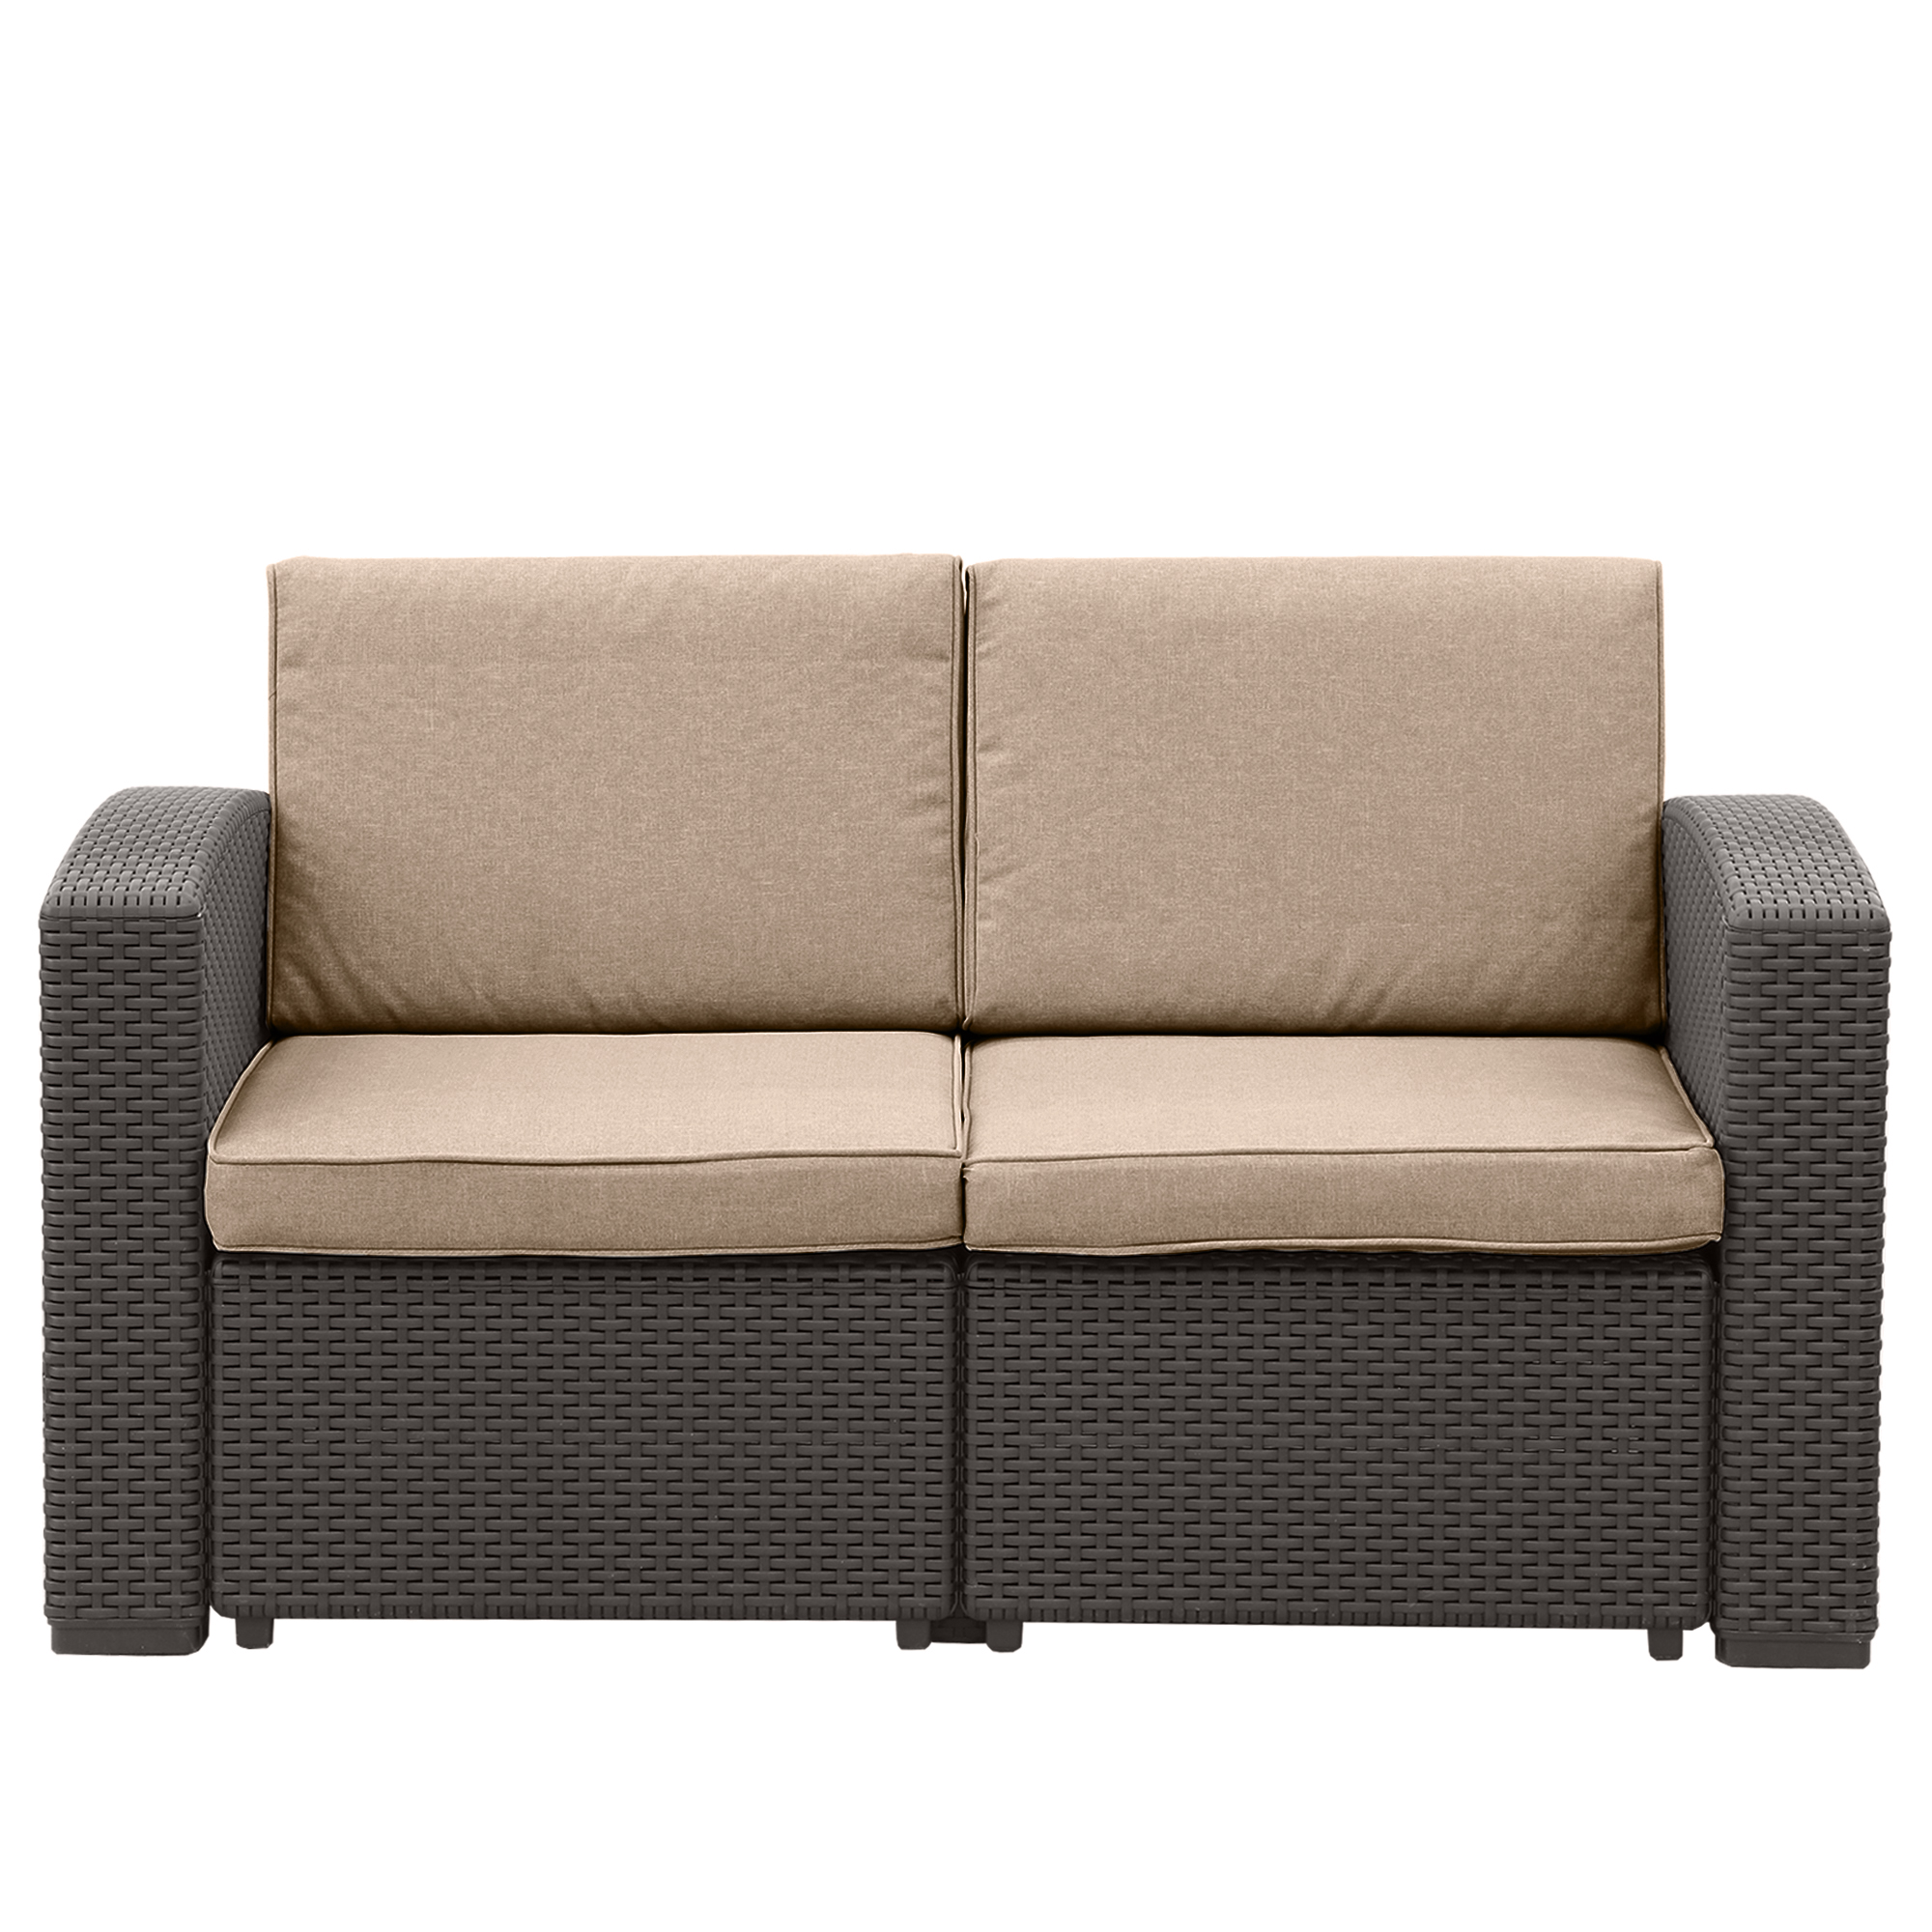 Комплект мебели LF 5 предметов, цвет коричневый, размер 199x75x71см 141x75x71 см - фото 2